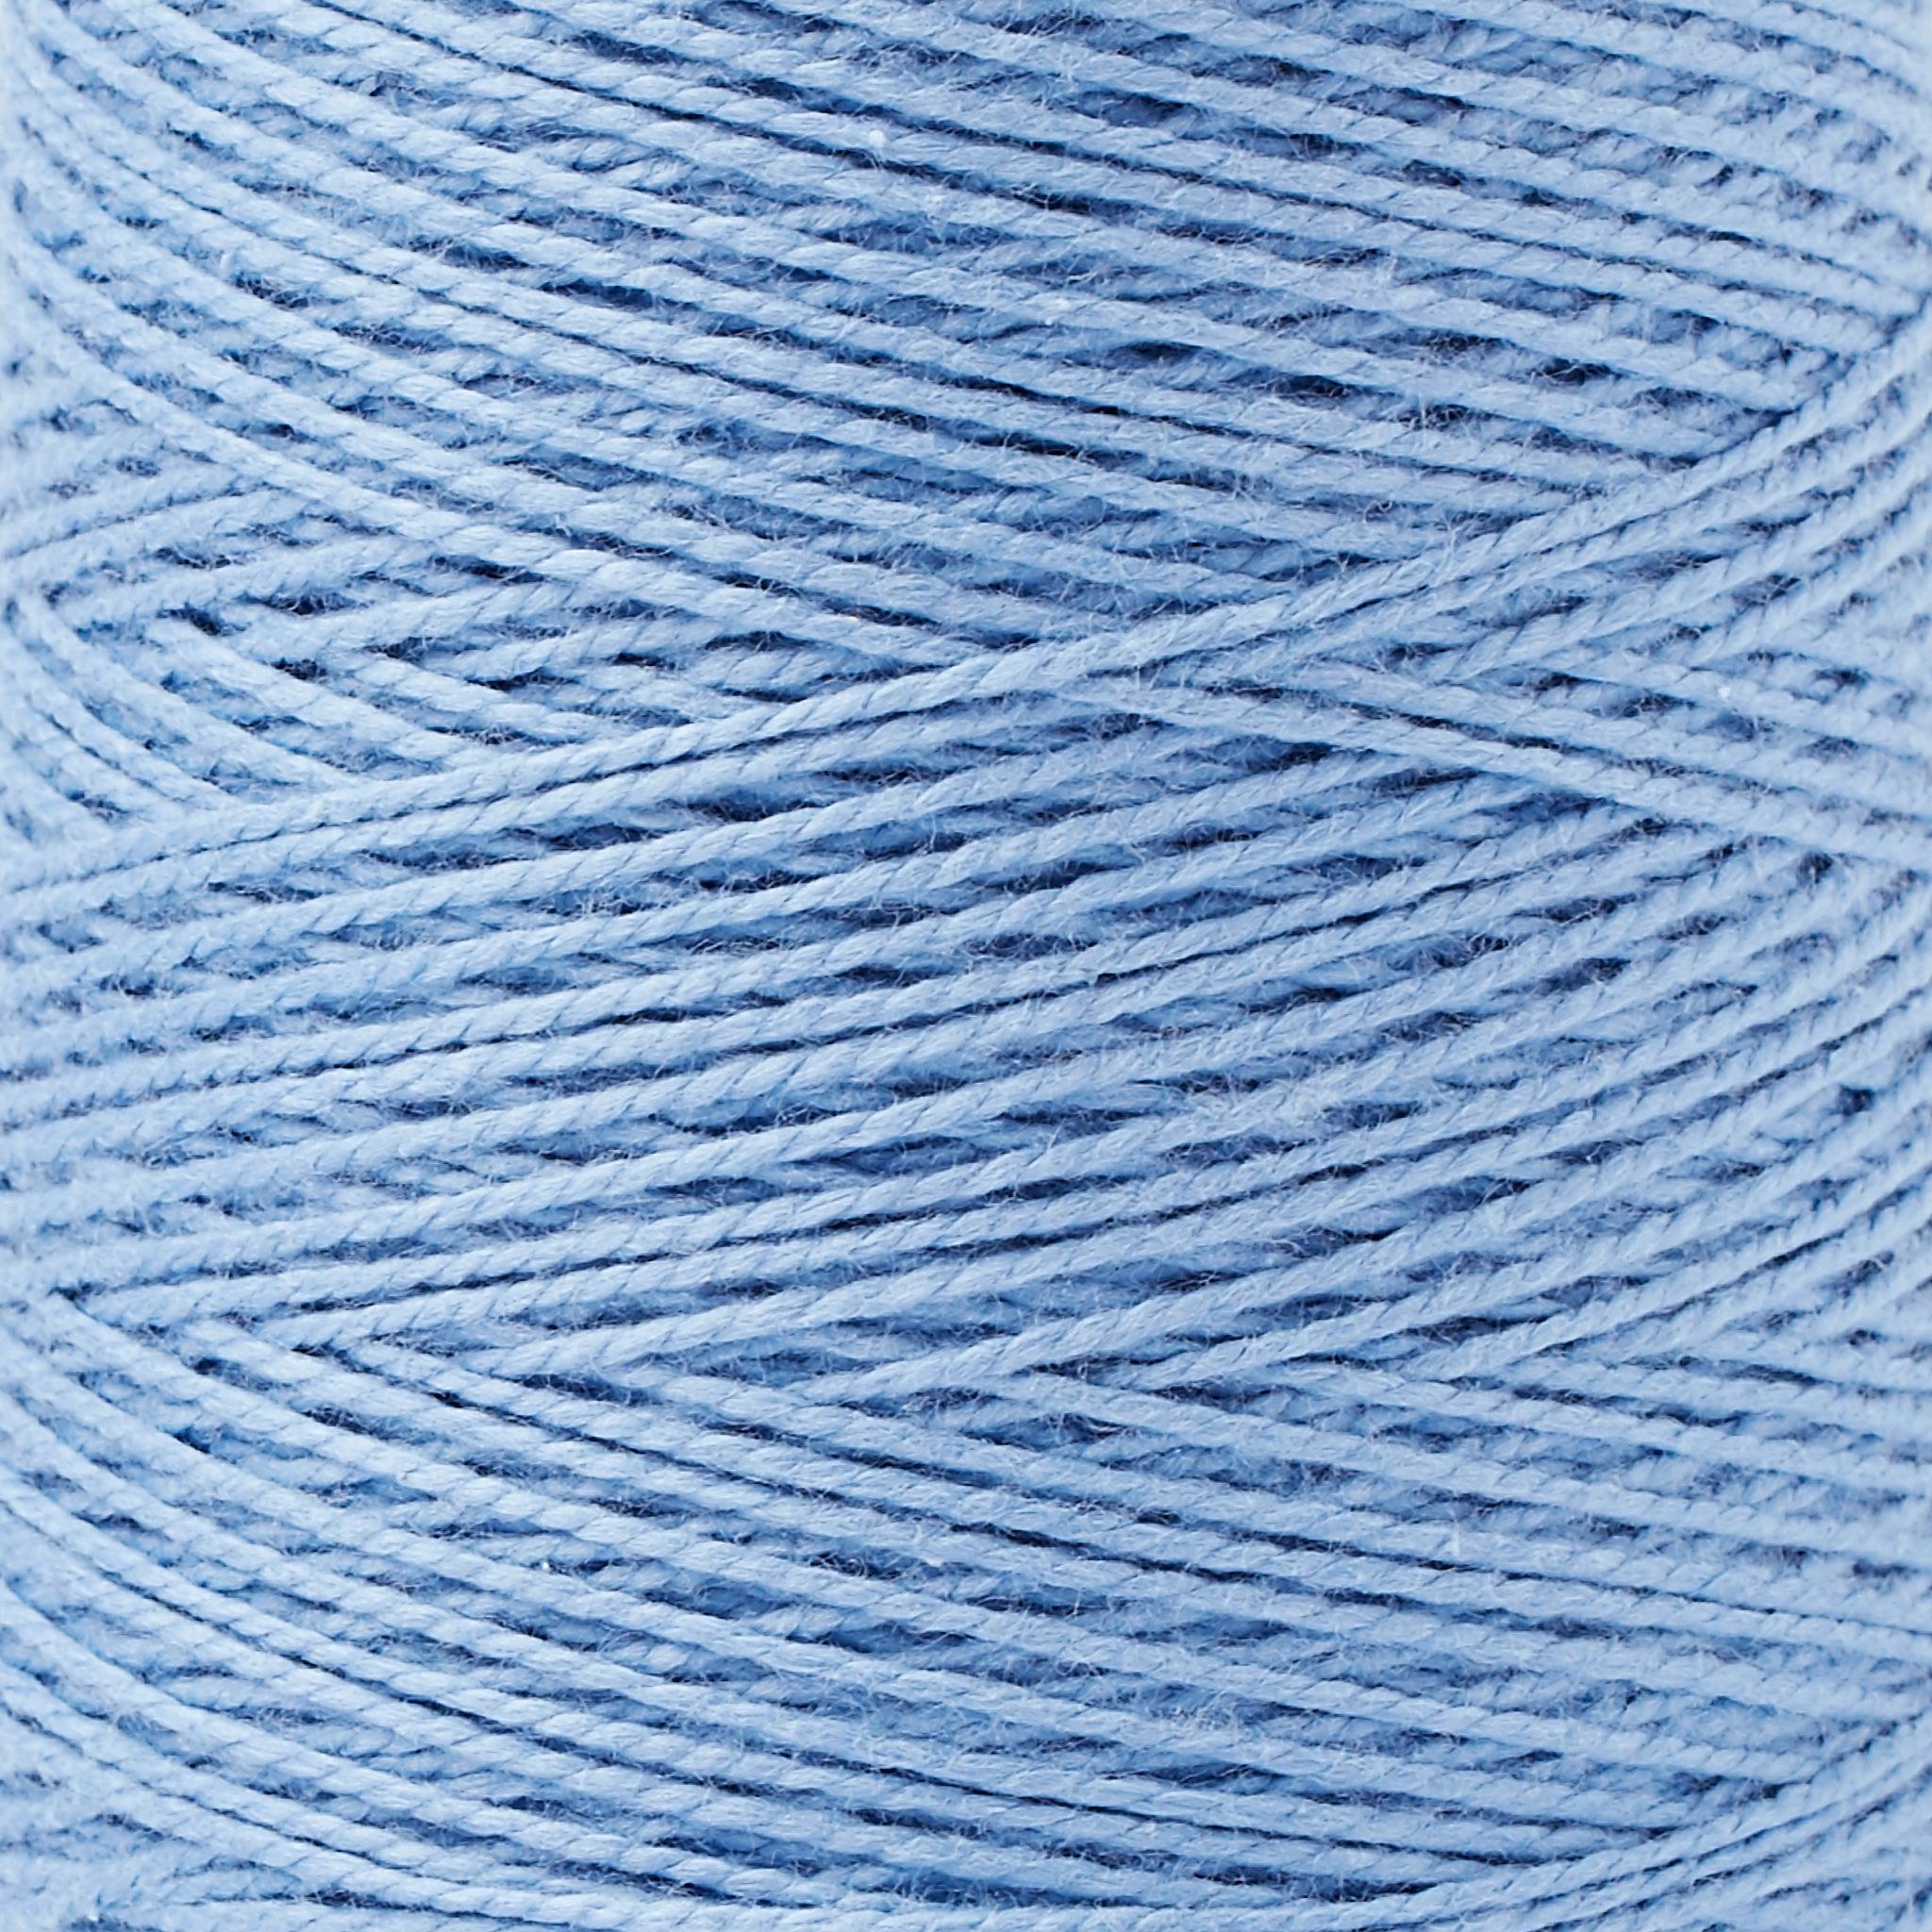 Yarn Mystery Box-2 Pounds-Free Shipping-No Wool